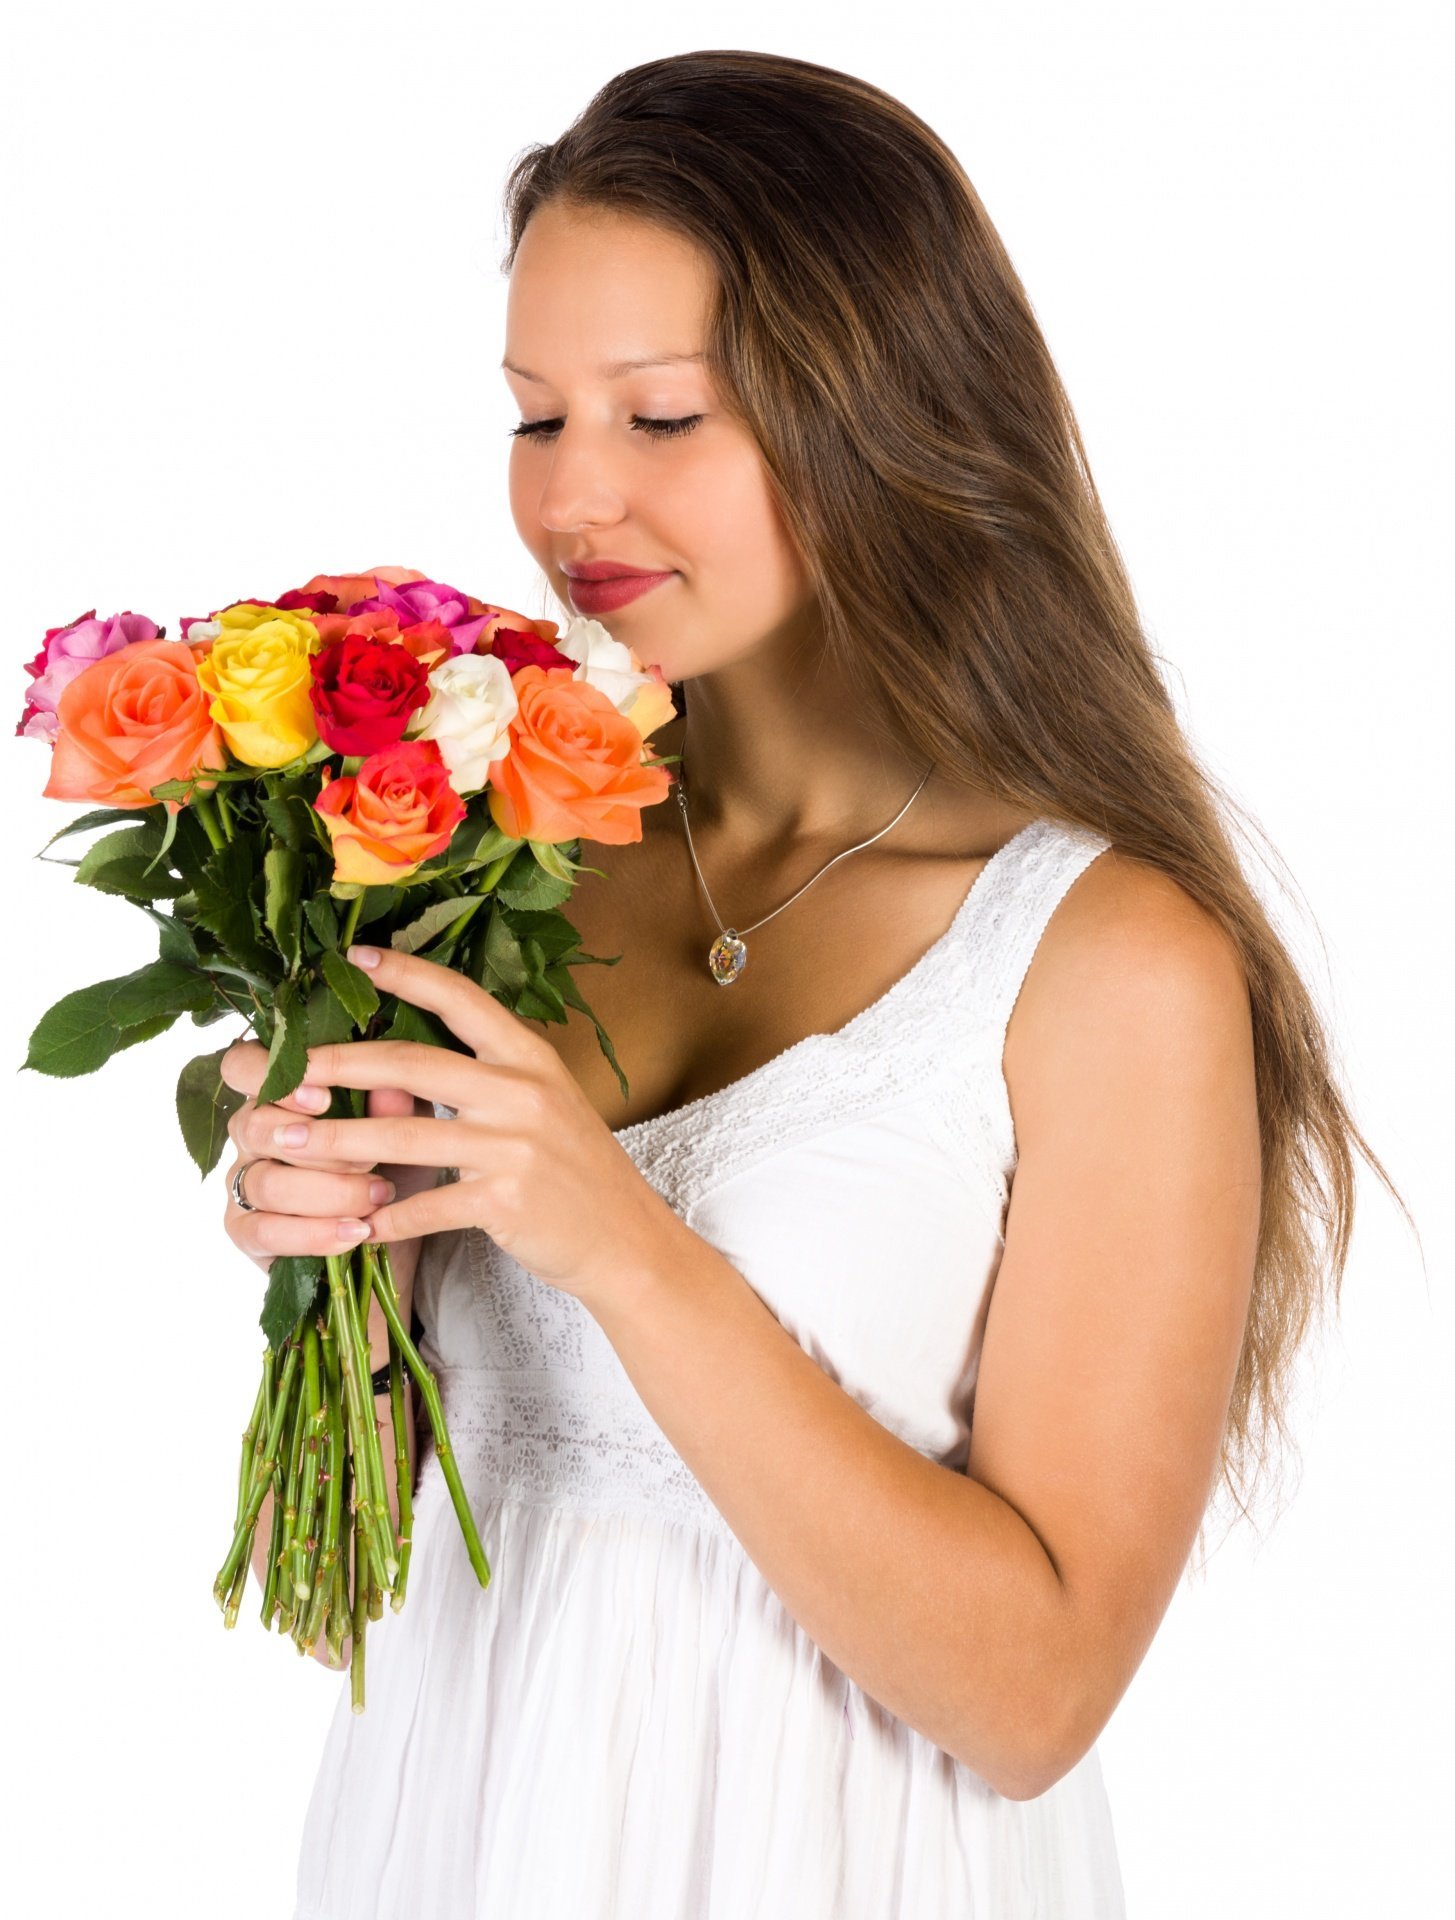 Дарите женщинам цветы jazzdauren где послушать. Букет "девушке". Букет цветов для женщины. Девушка с цветами. Букет в руках у женщины.